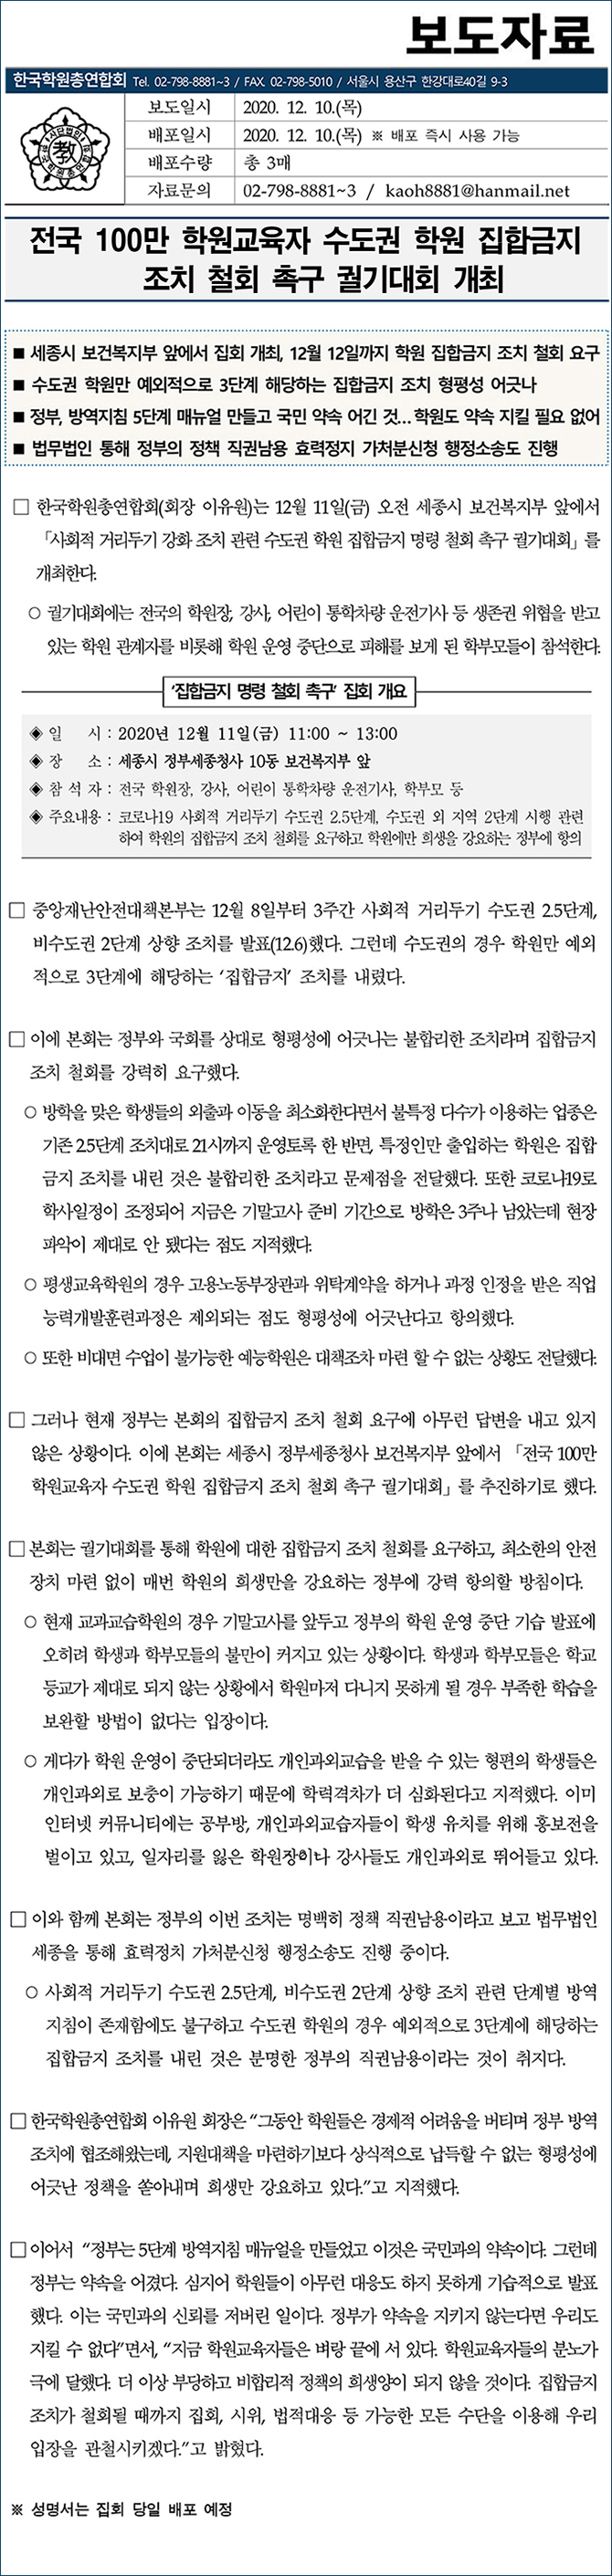 보도자료_사회적 거리두기 강화 조치 관련 집합금지 조치 철회 촉구 집회 개최 201210.jpg